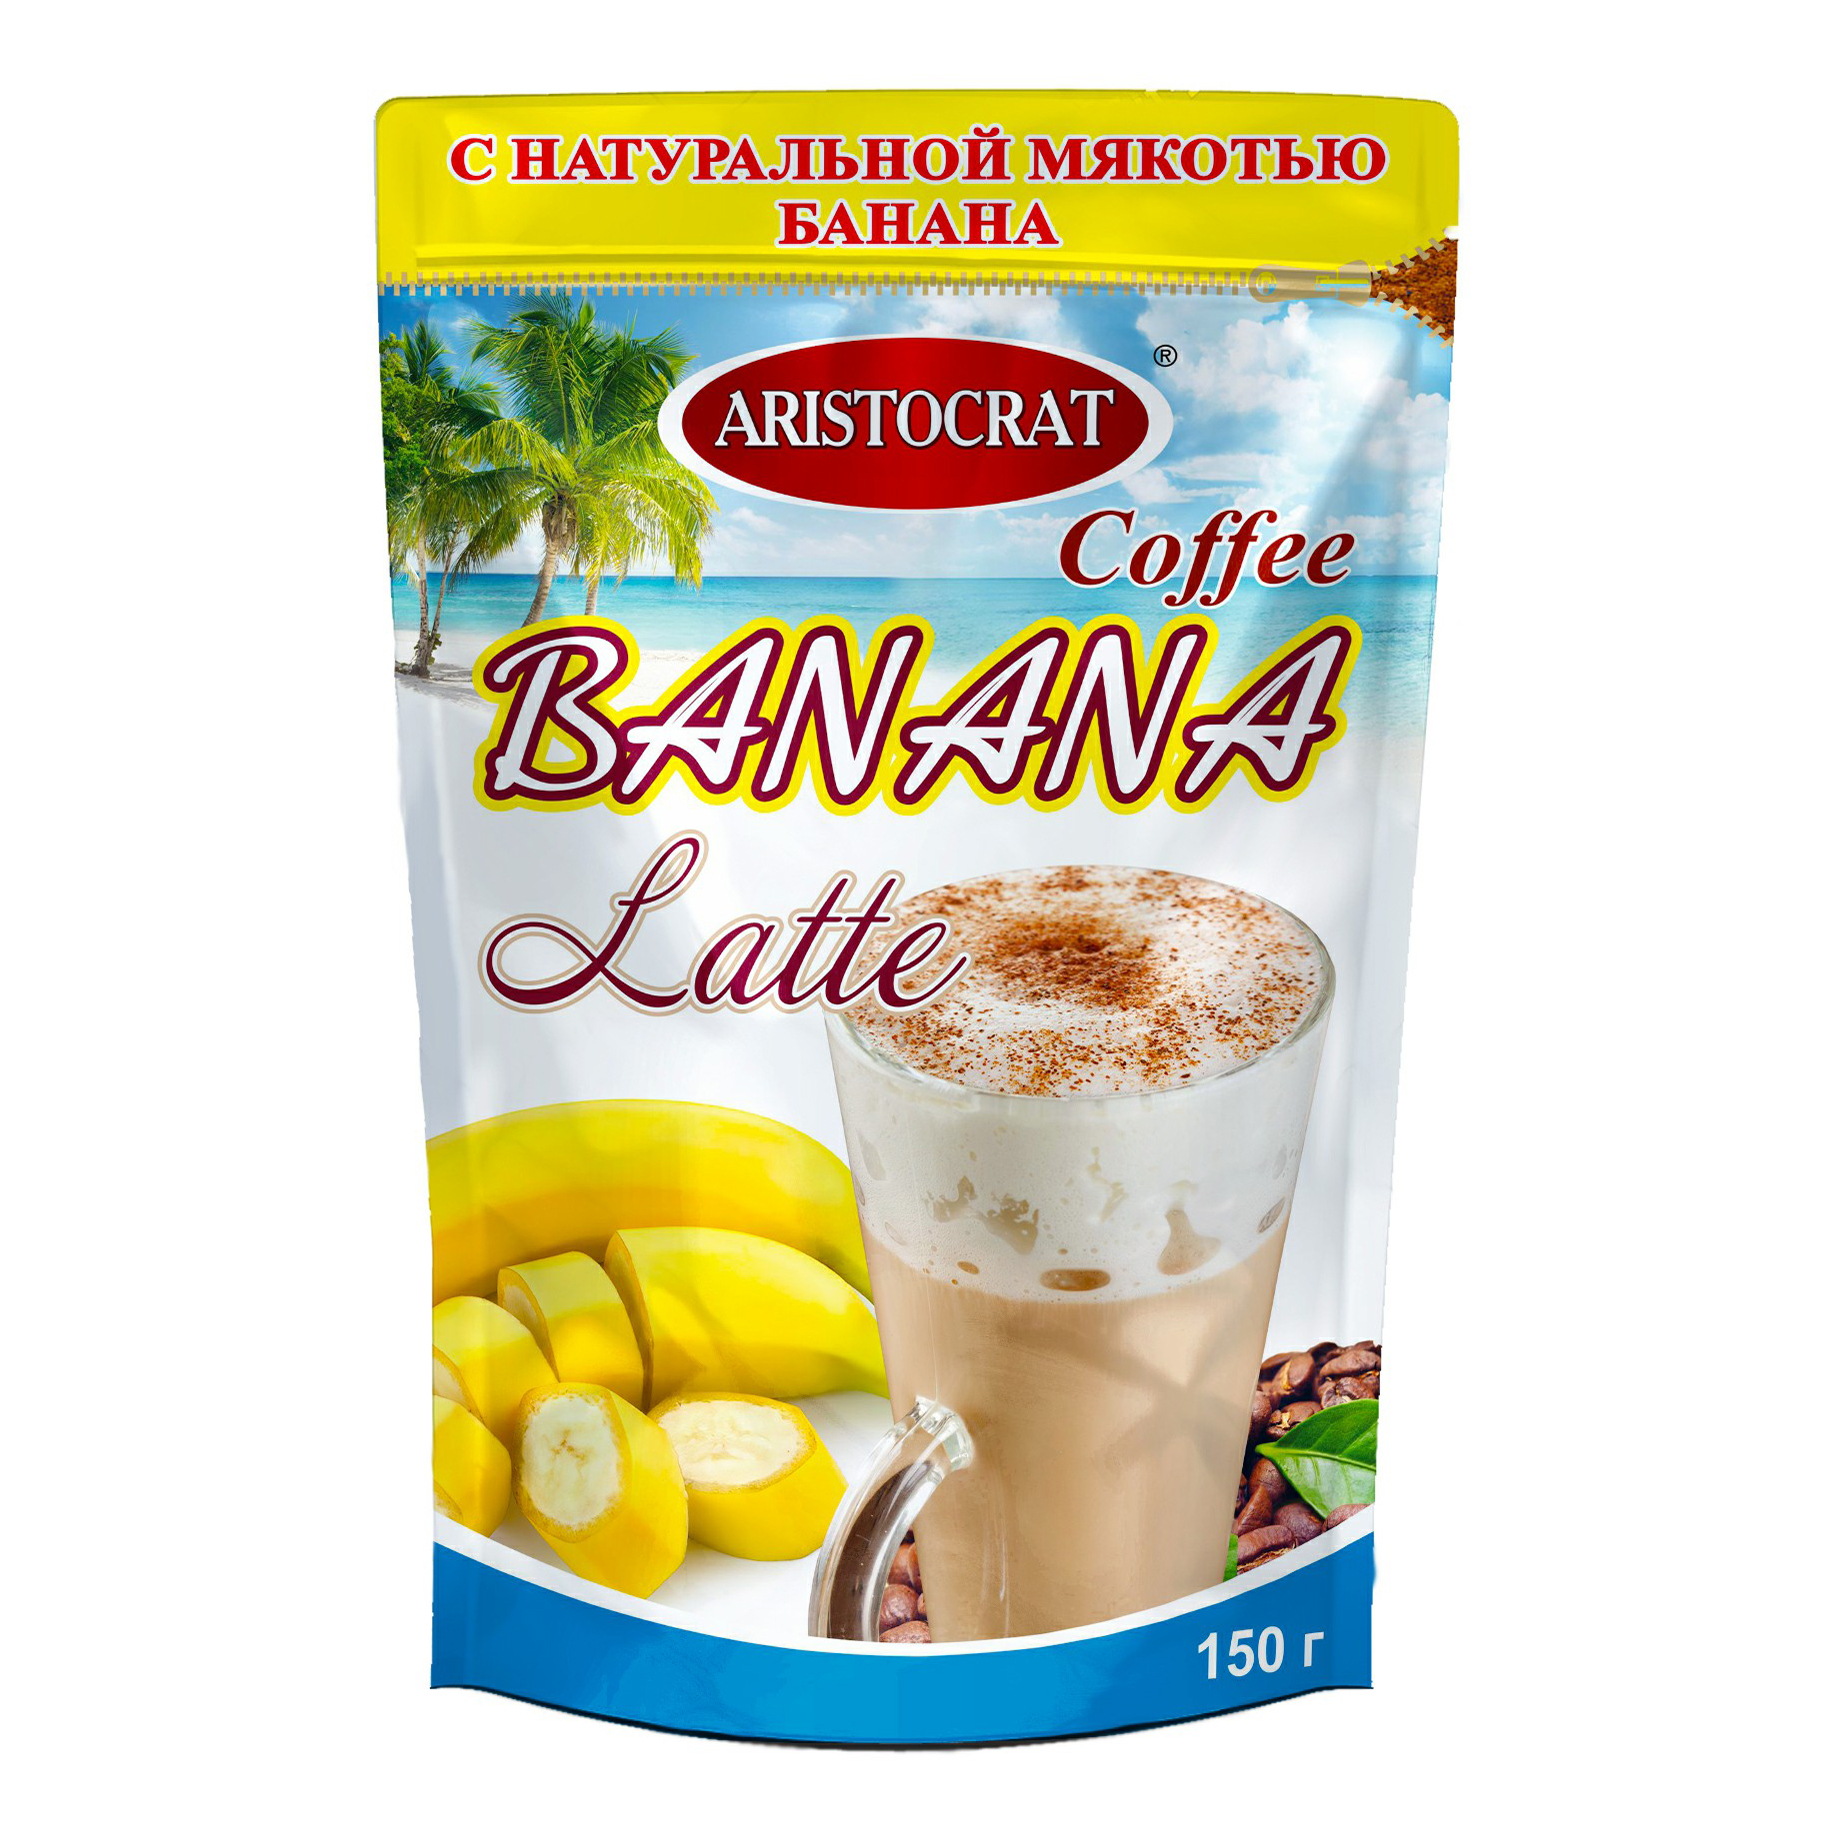 Кофейный напиток Aristocrat Latte Banana растворимый 150 г